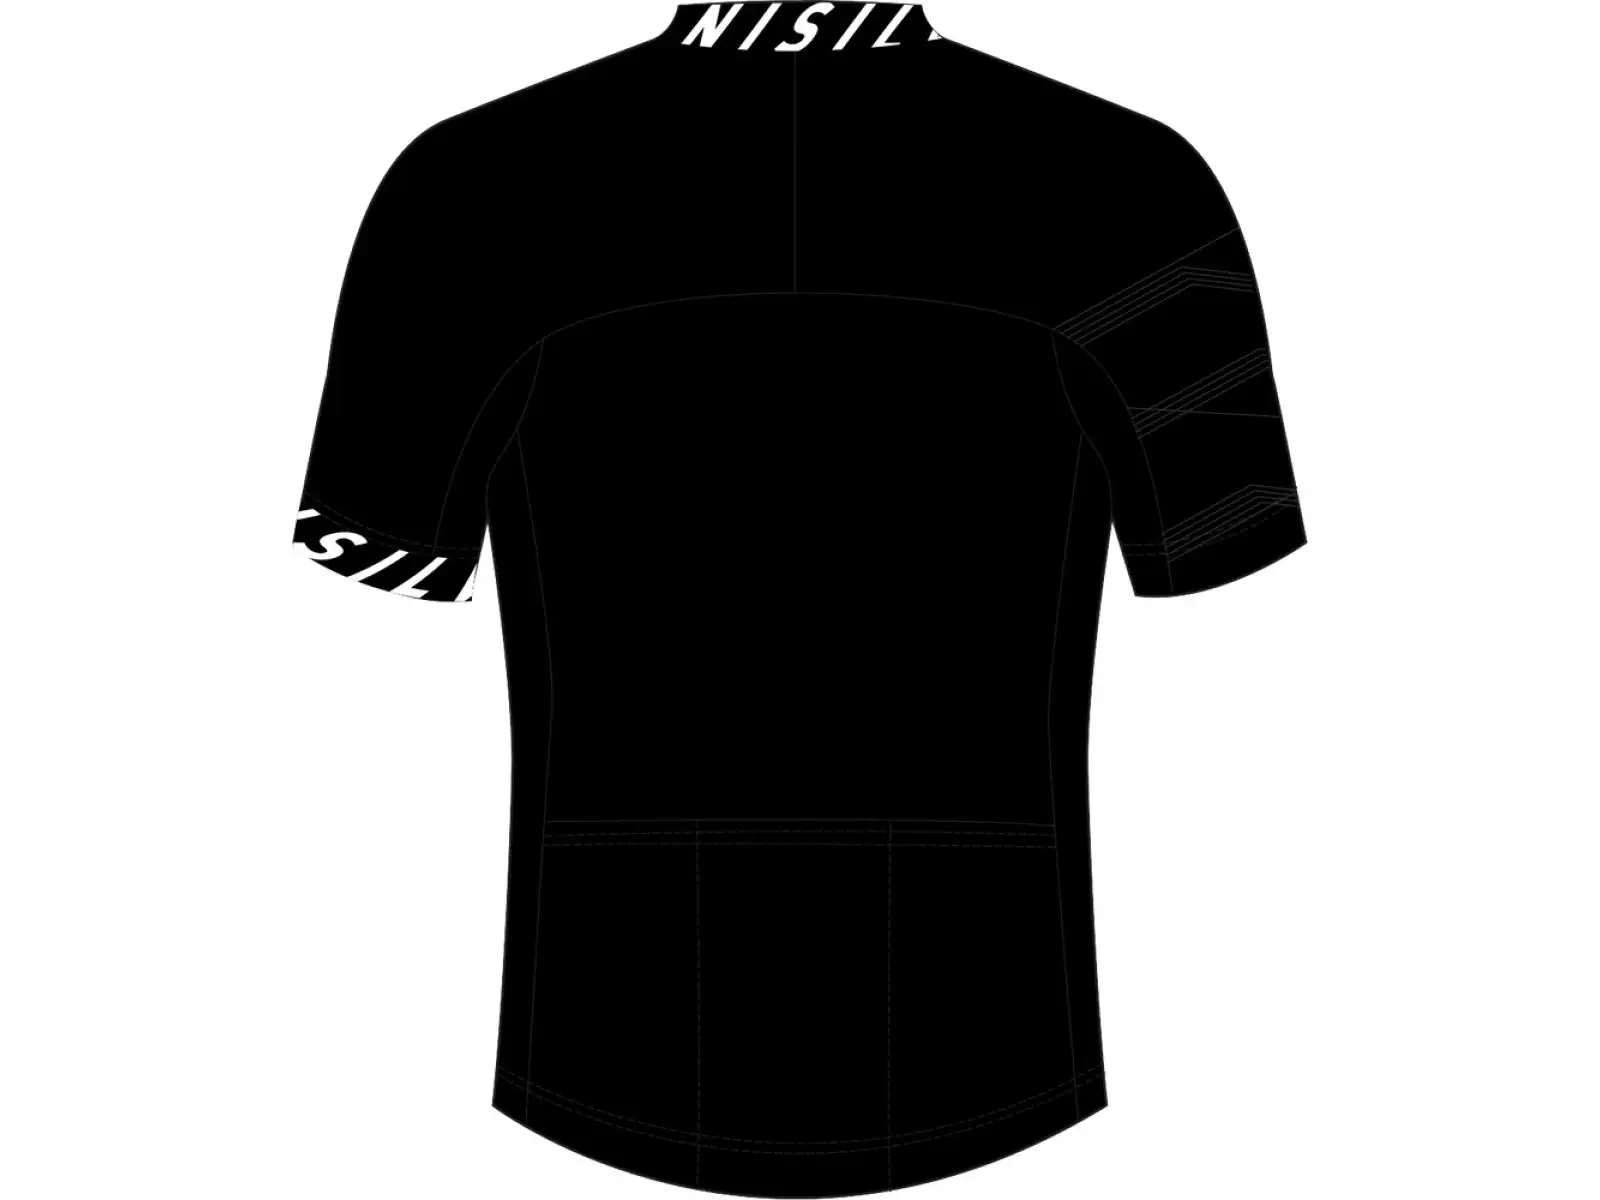 Silvini Stelvio pánský dres krátký rukáv black/white